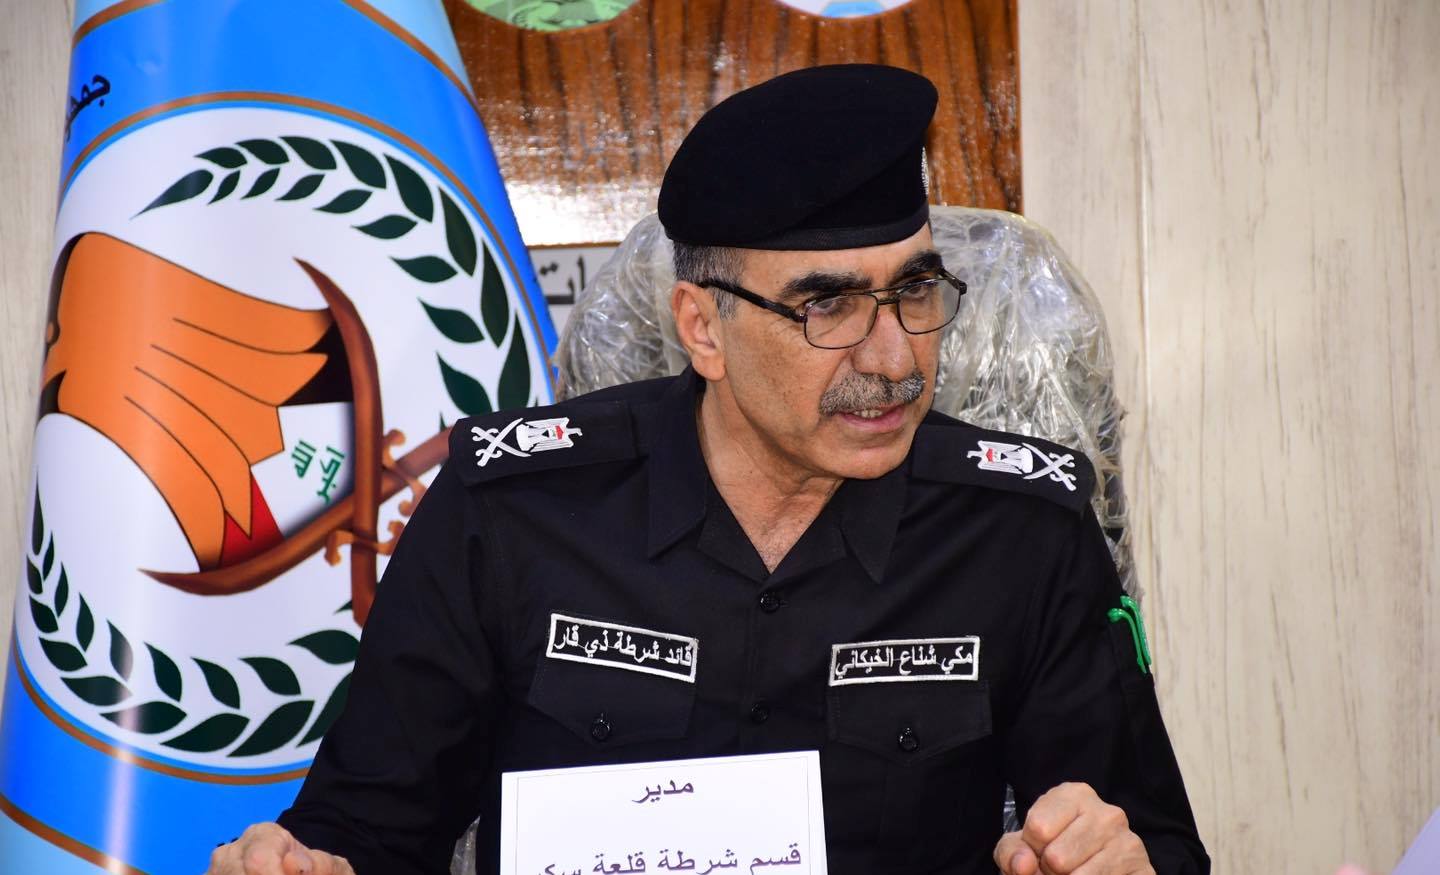 قائد شرطة ذي قار يبلغ شفق نيوز حقيقة إعفاءه من المنصب